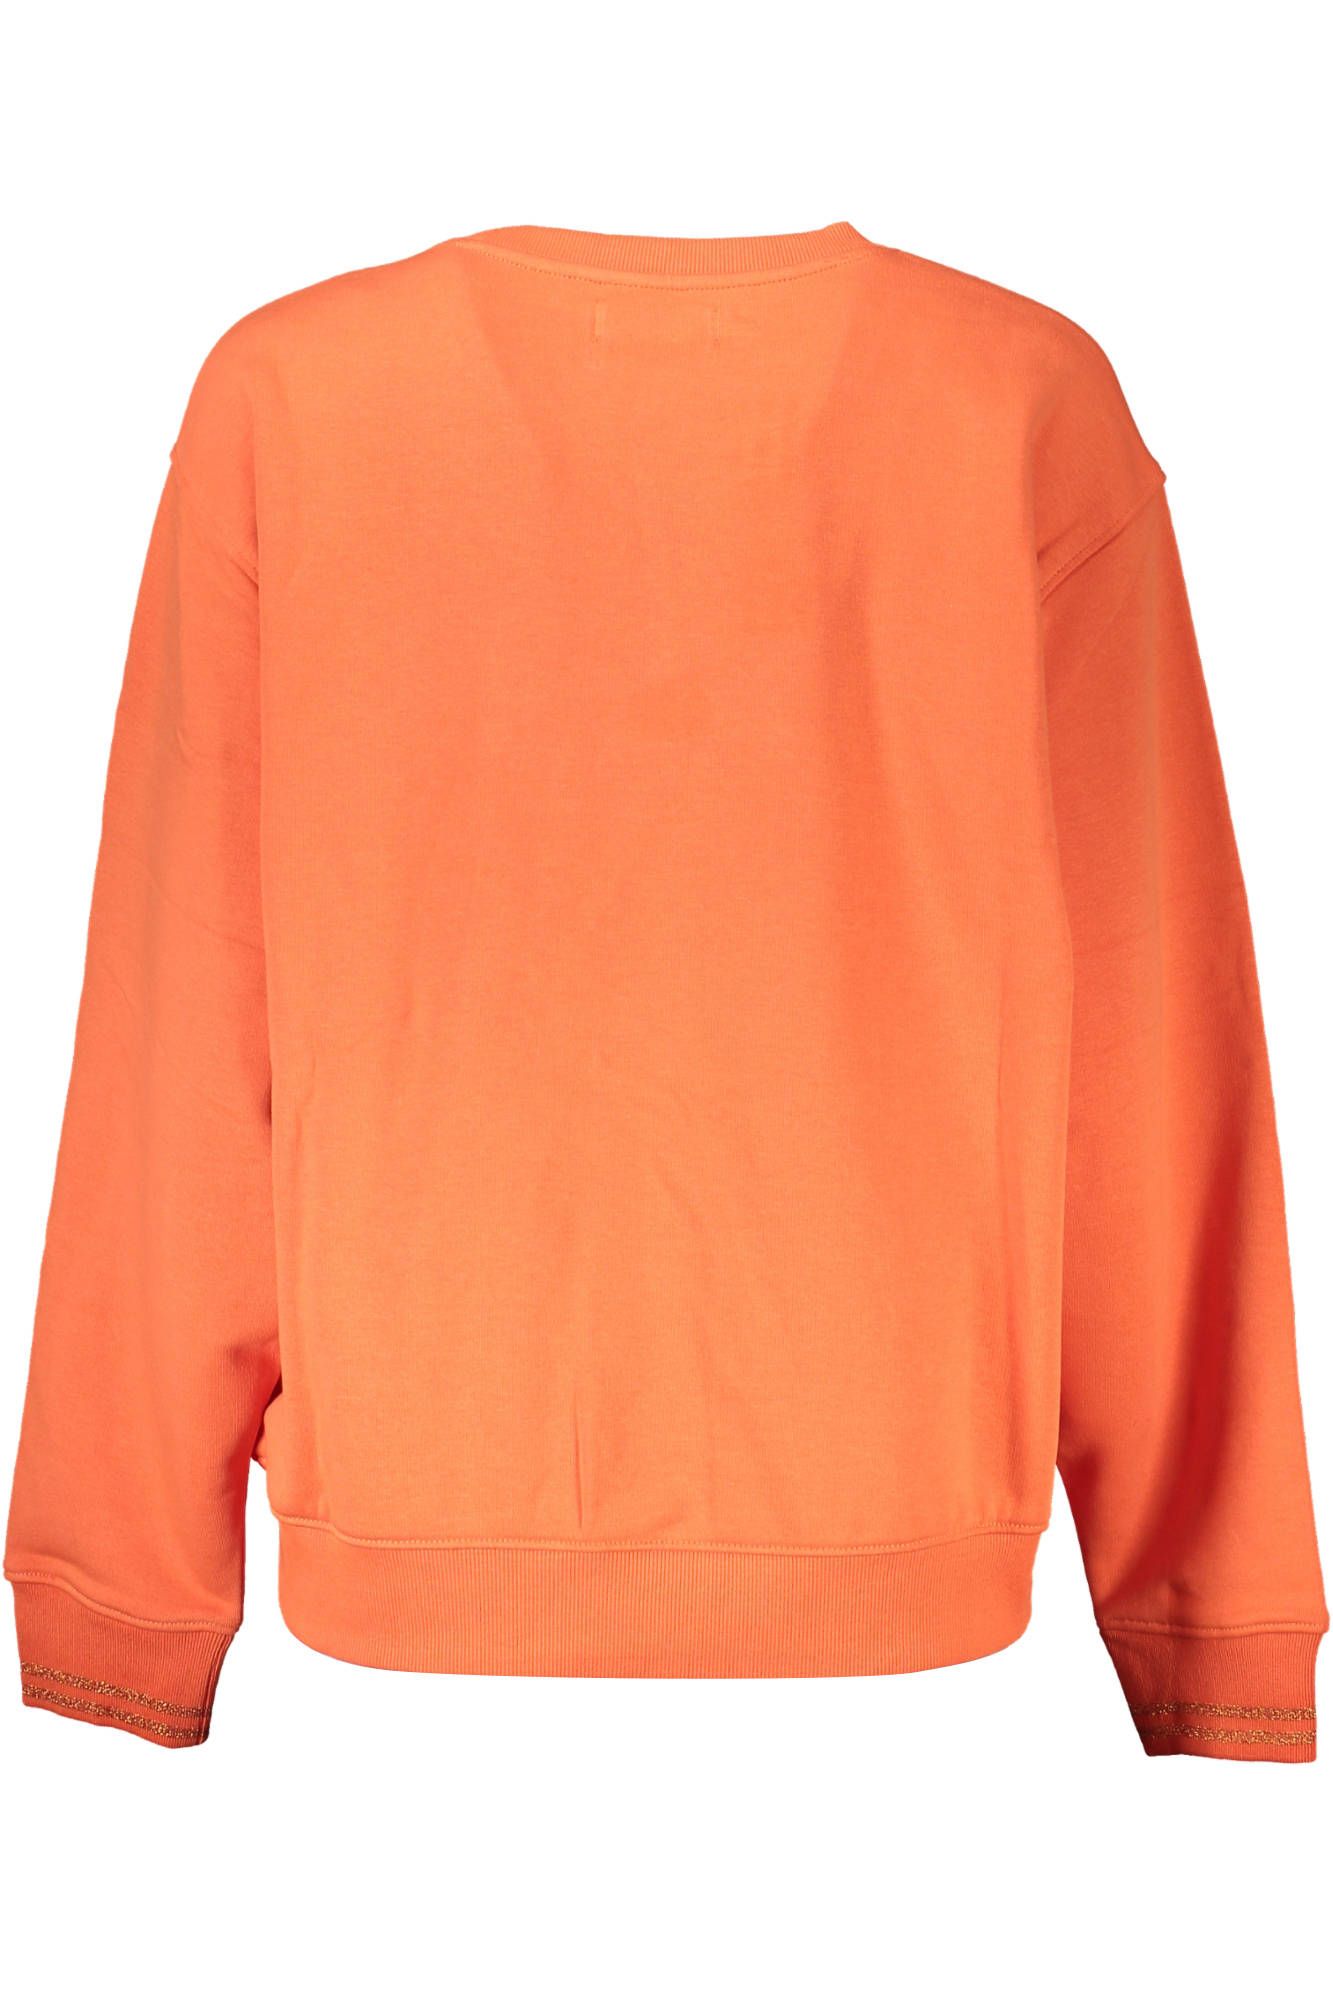 Desigual Women's Orange Cotton Round Neck Sweater